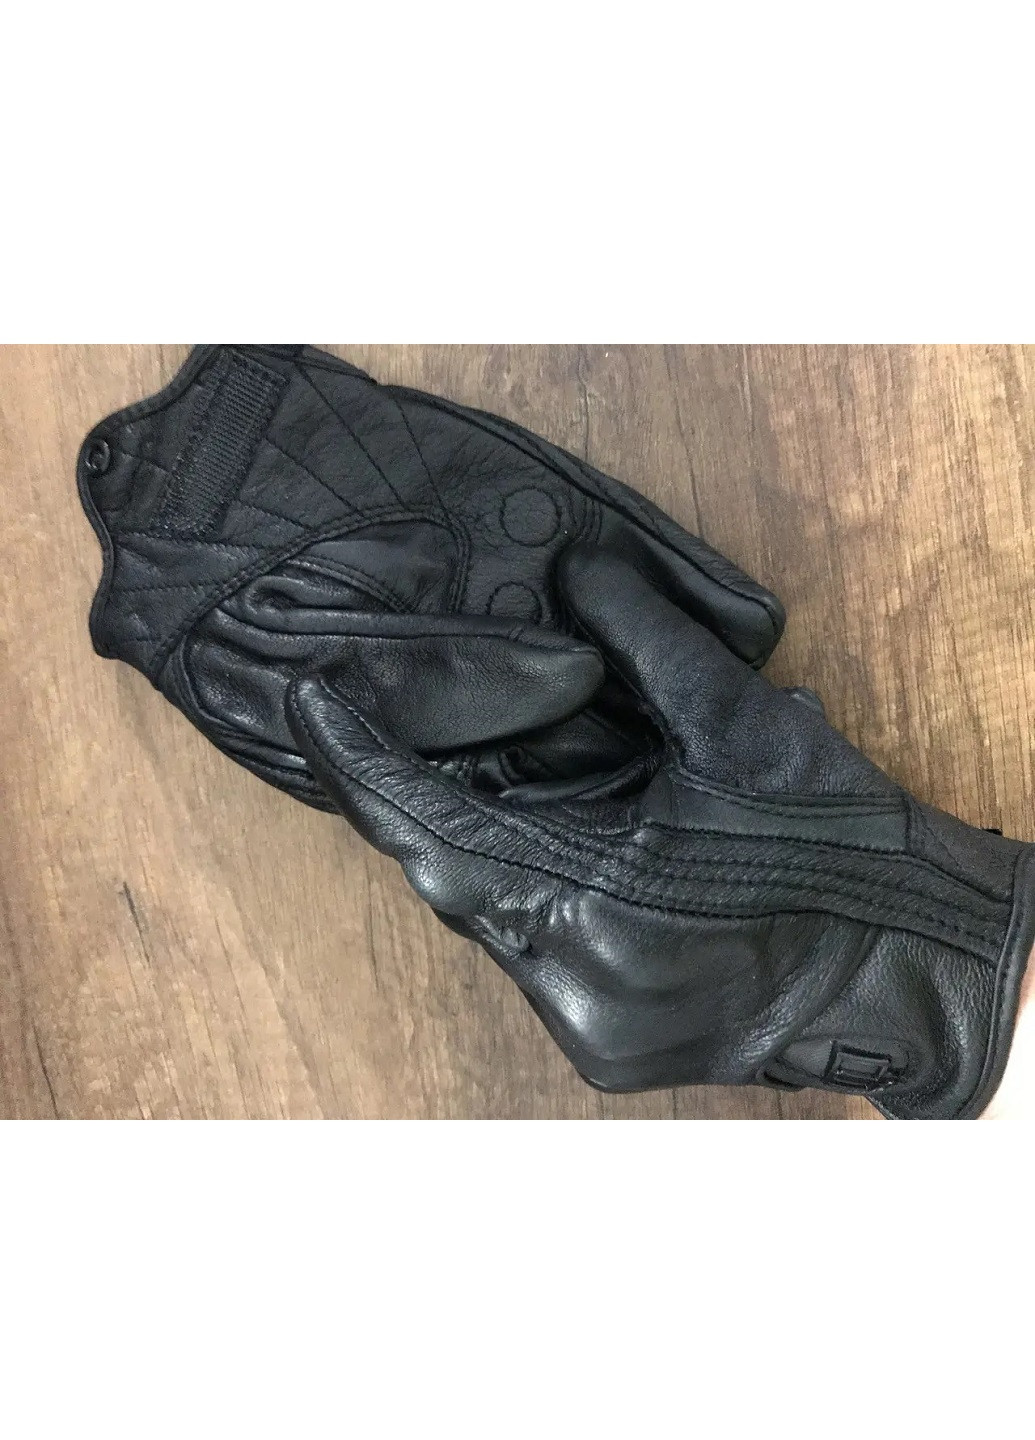 Мото перчатки рукавицы для мотоцикла кожаные летние вентилируемые унисекс мотозащита (57227-Нов) Размер S Francesco Marconi (252837533)